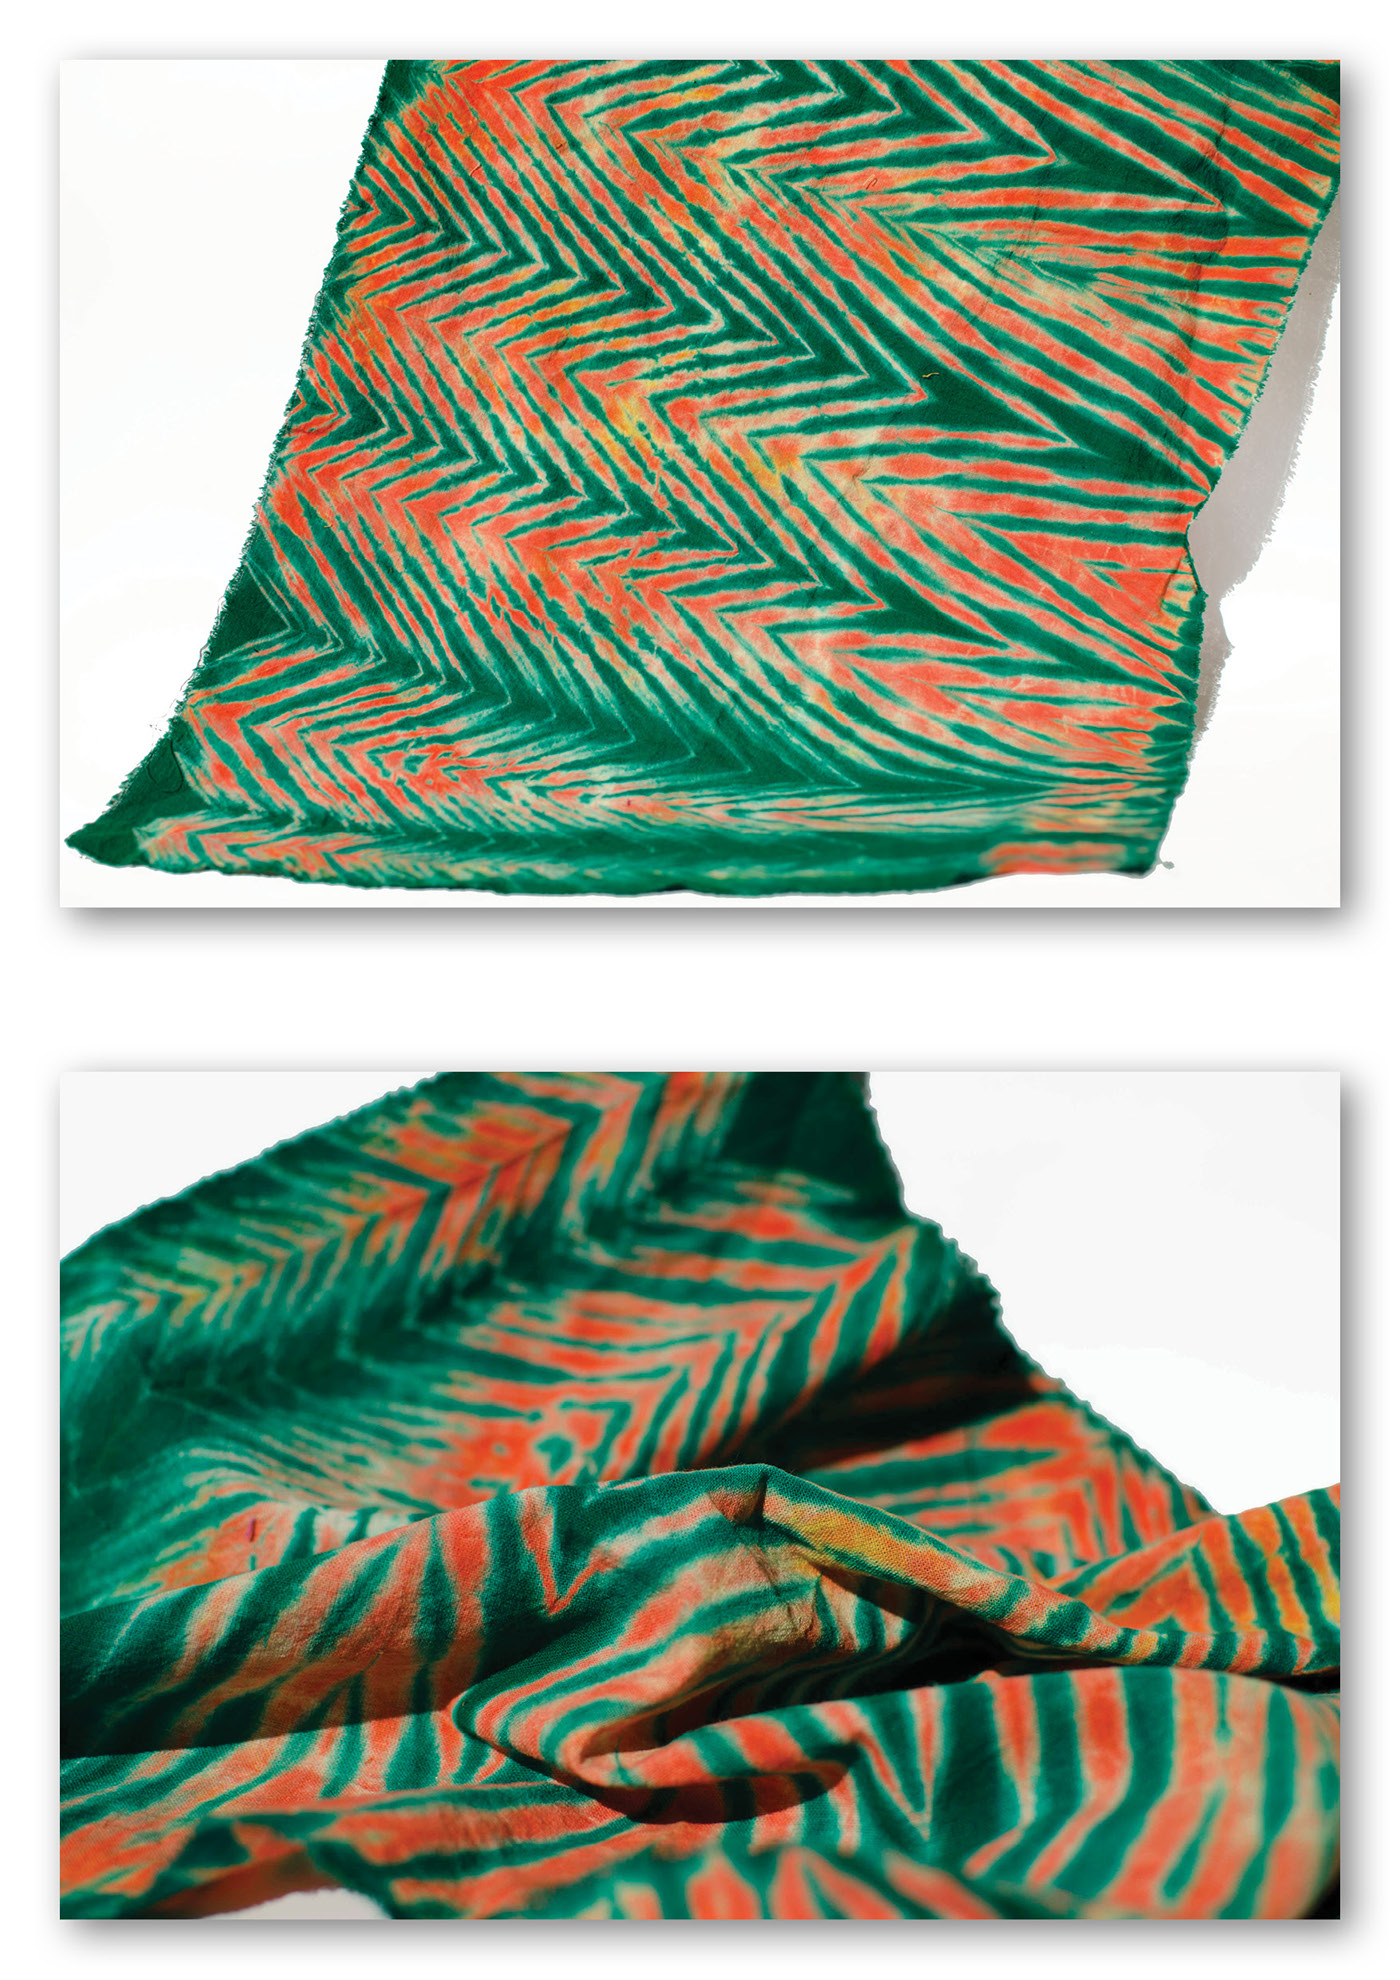 arashi shibori bandhani Lehariya dyeing clamp dyeing dye textile colorful